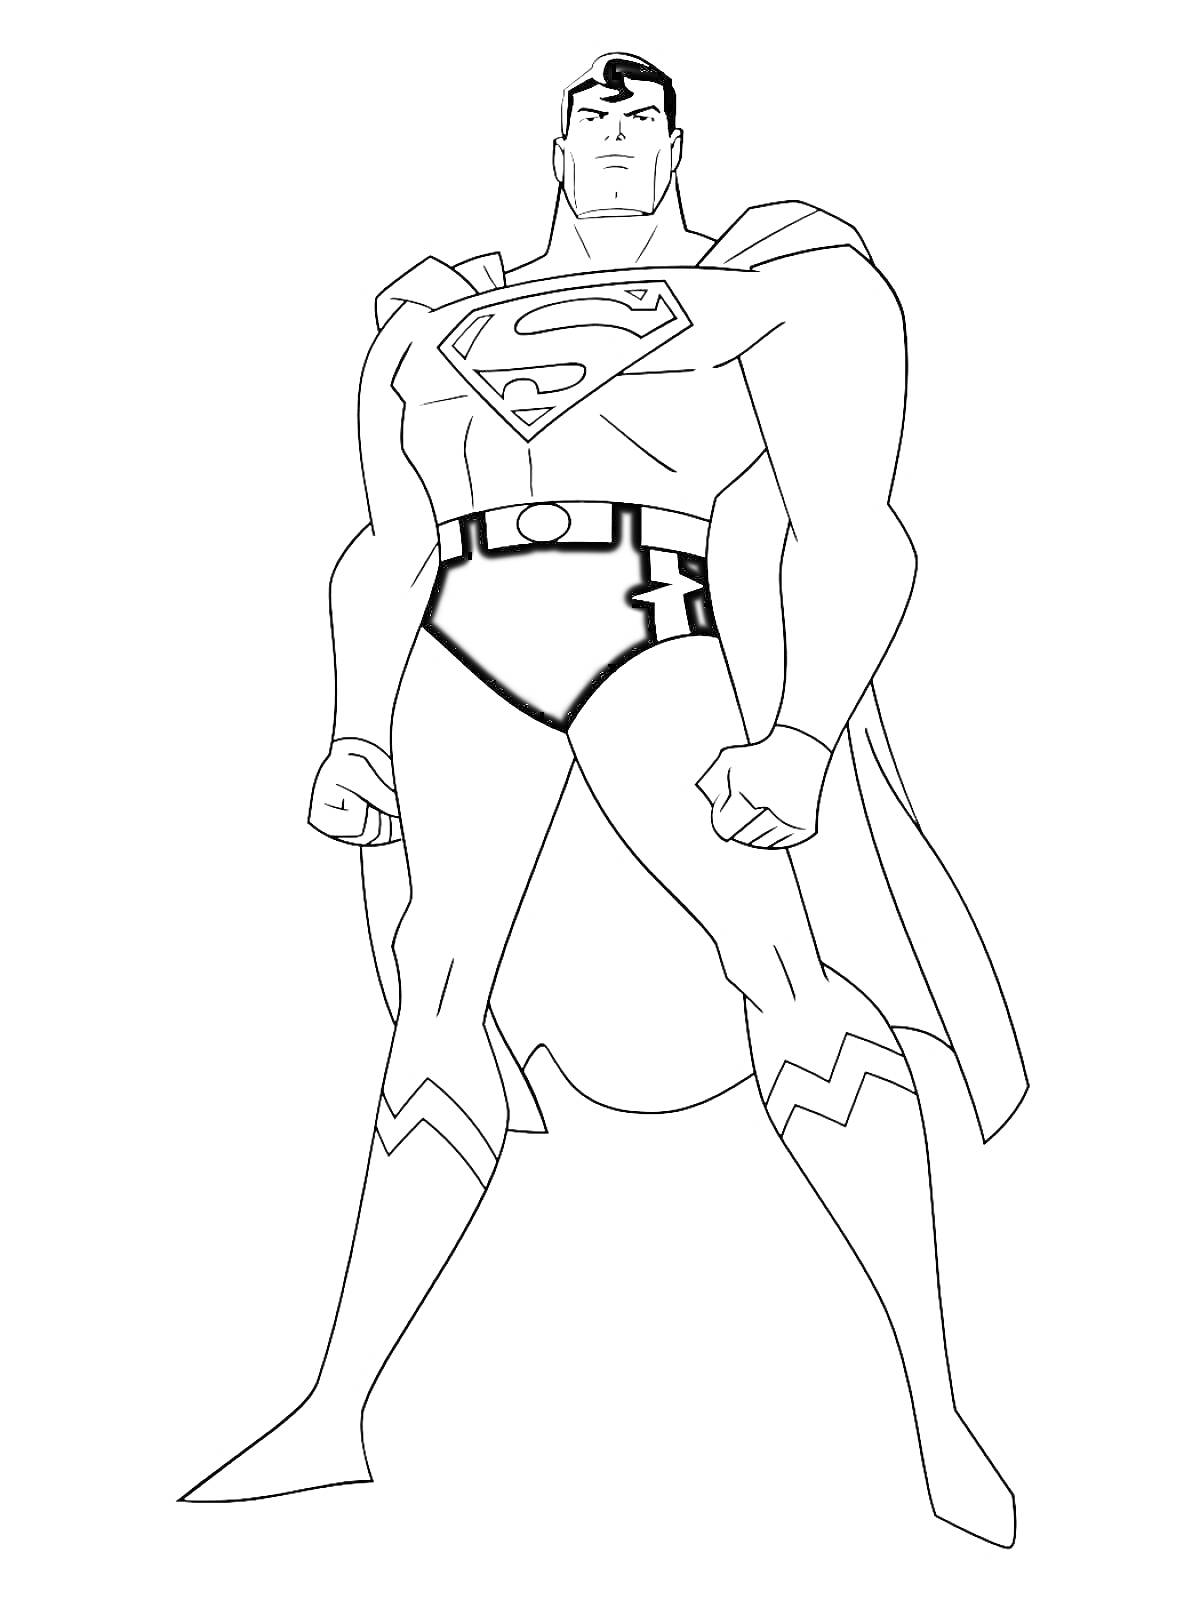 Раскраска Супермен - Лига Справедливости. Человек в супергеройском костюме с буквой 